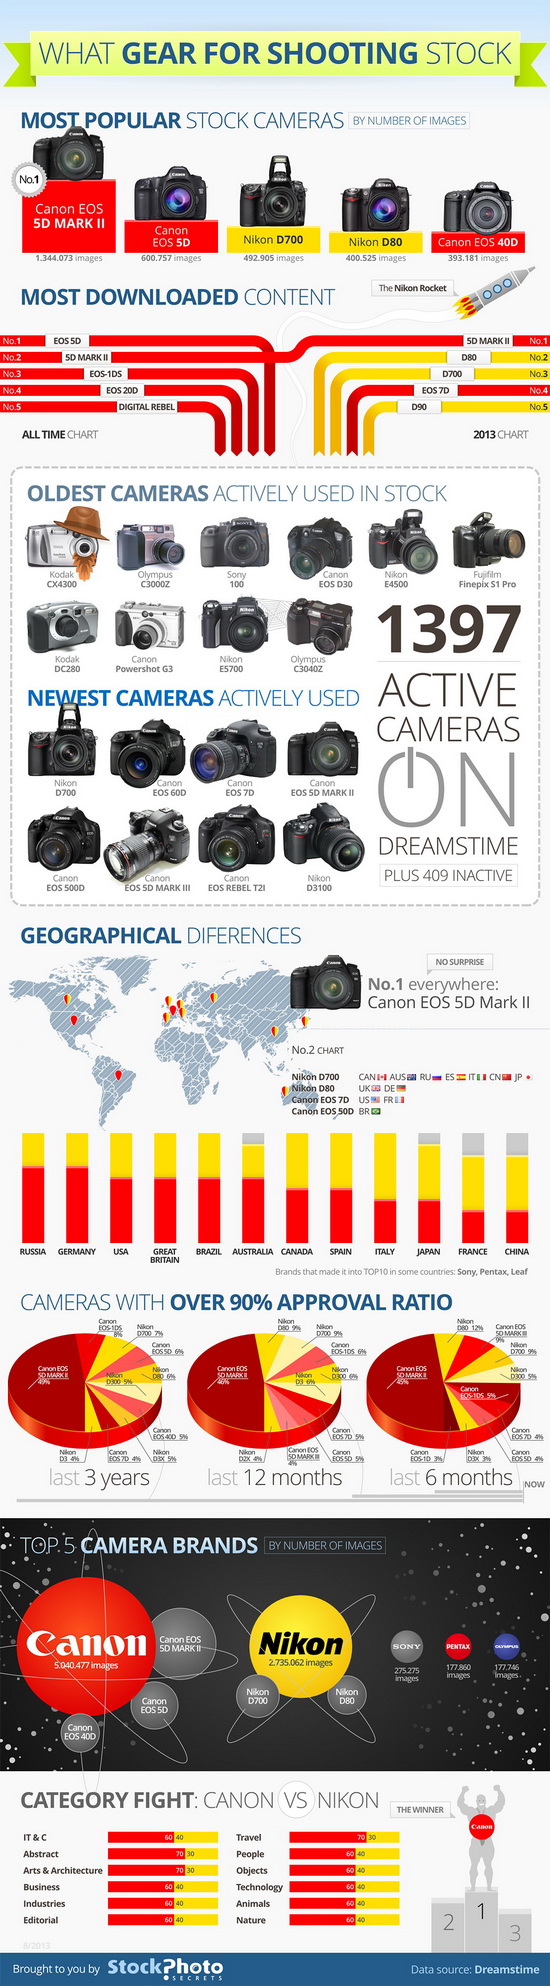 सर्वाधिक-लोकप्रिय-कॅमेरा-ब्रँड इन्फोग्राफिक स्टॉक साइटवरील सर्वात लोकप्रिय कॅमेरे उघड करते बातम्या आणि पुनरावलोकने